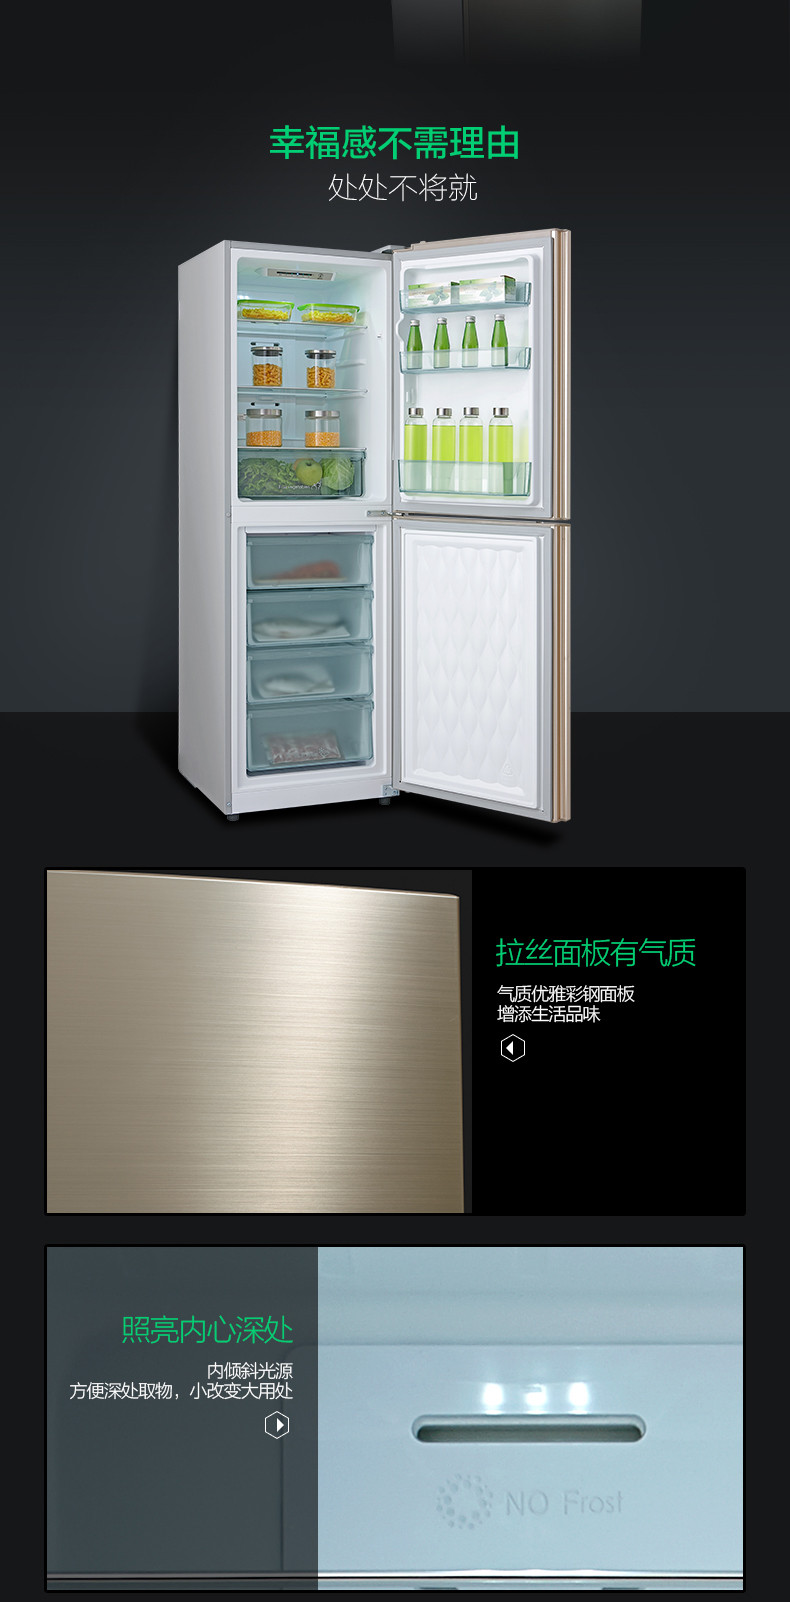 【苏宁专供】美的冰箱BCD-236WM(E)流光金